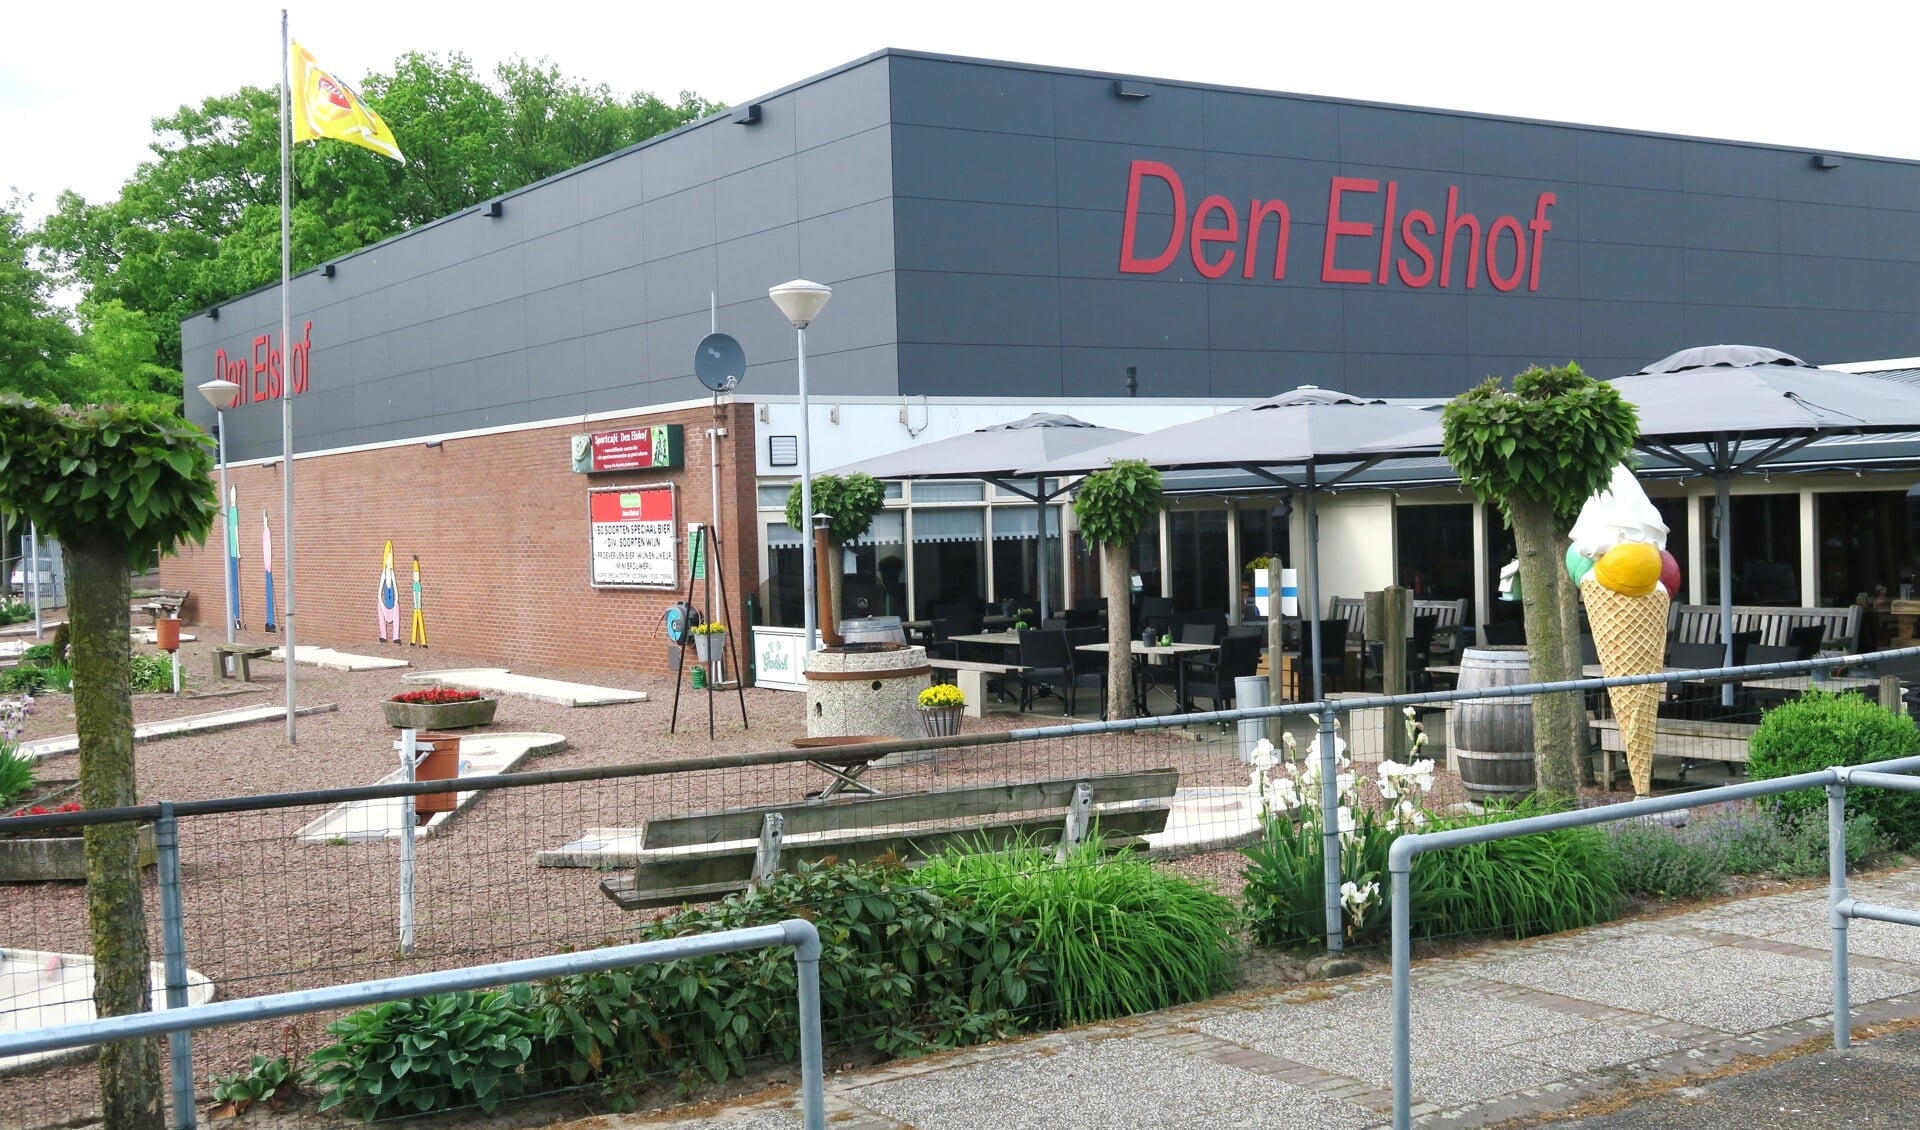 De huidige sporthal Den Elshof, die mogelijk wordt afgestoten. Foto: Theo Huijskes